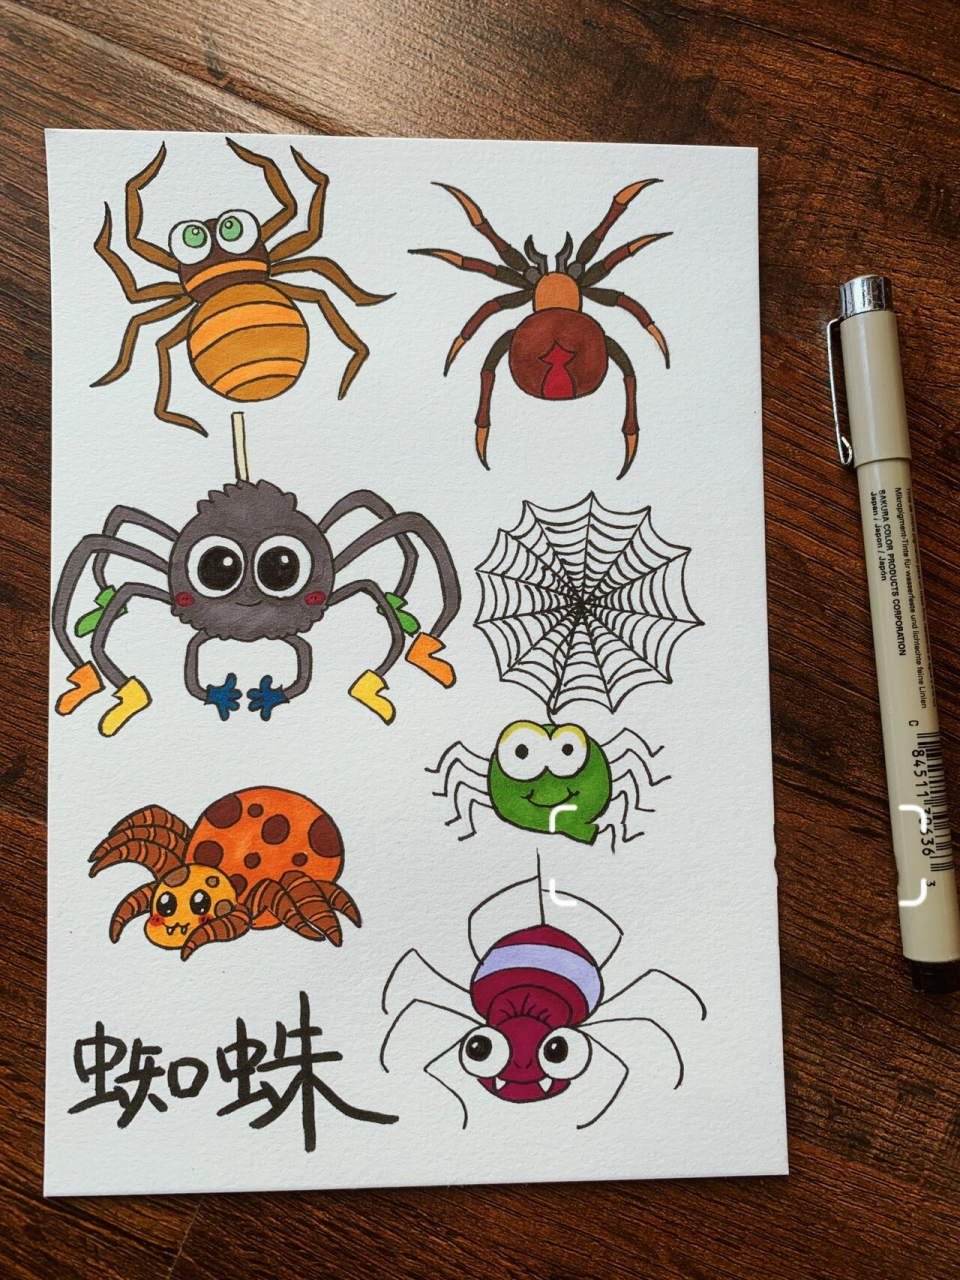 蜘蛛简笔画蜈蚣图片